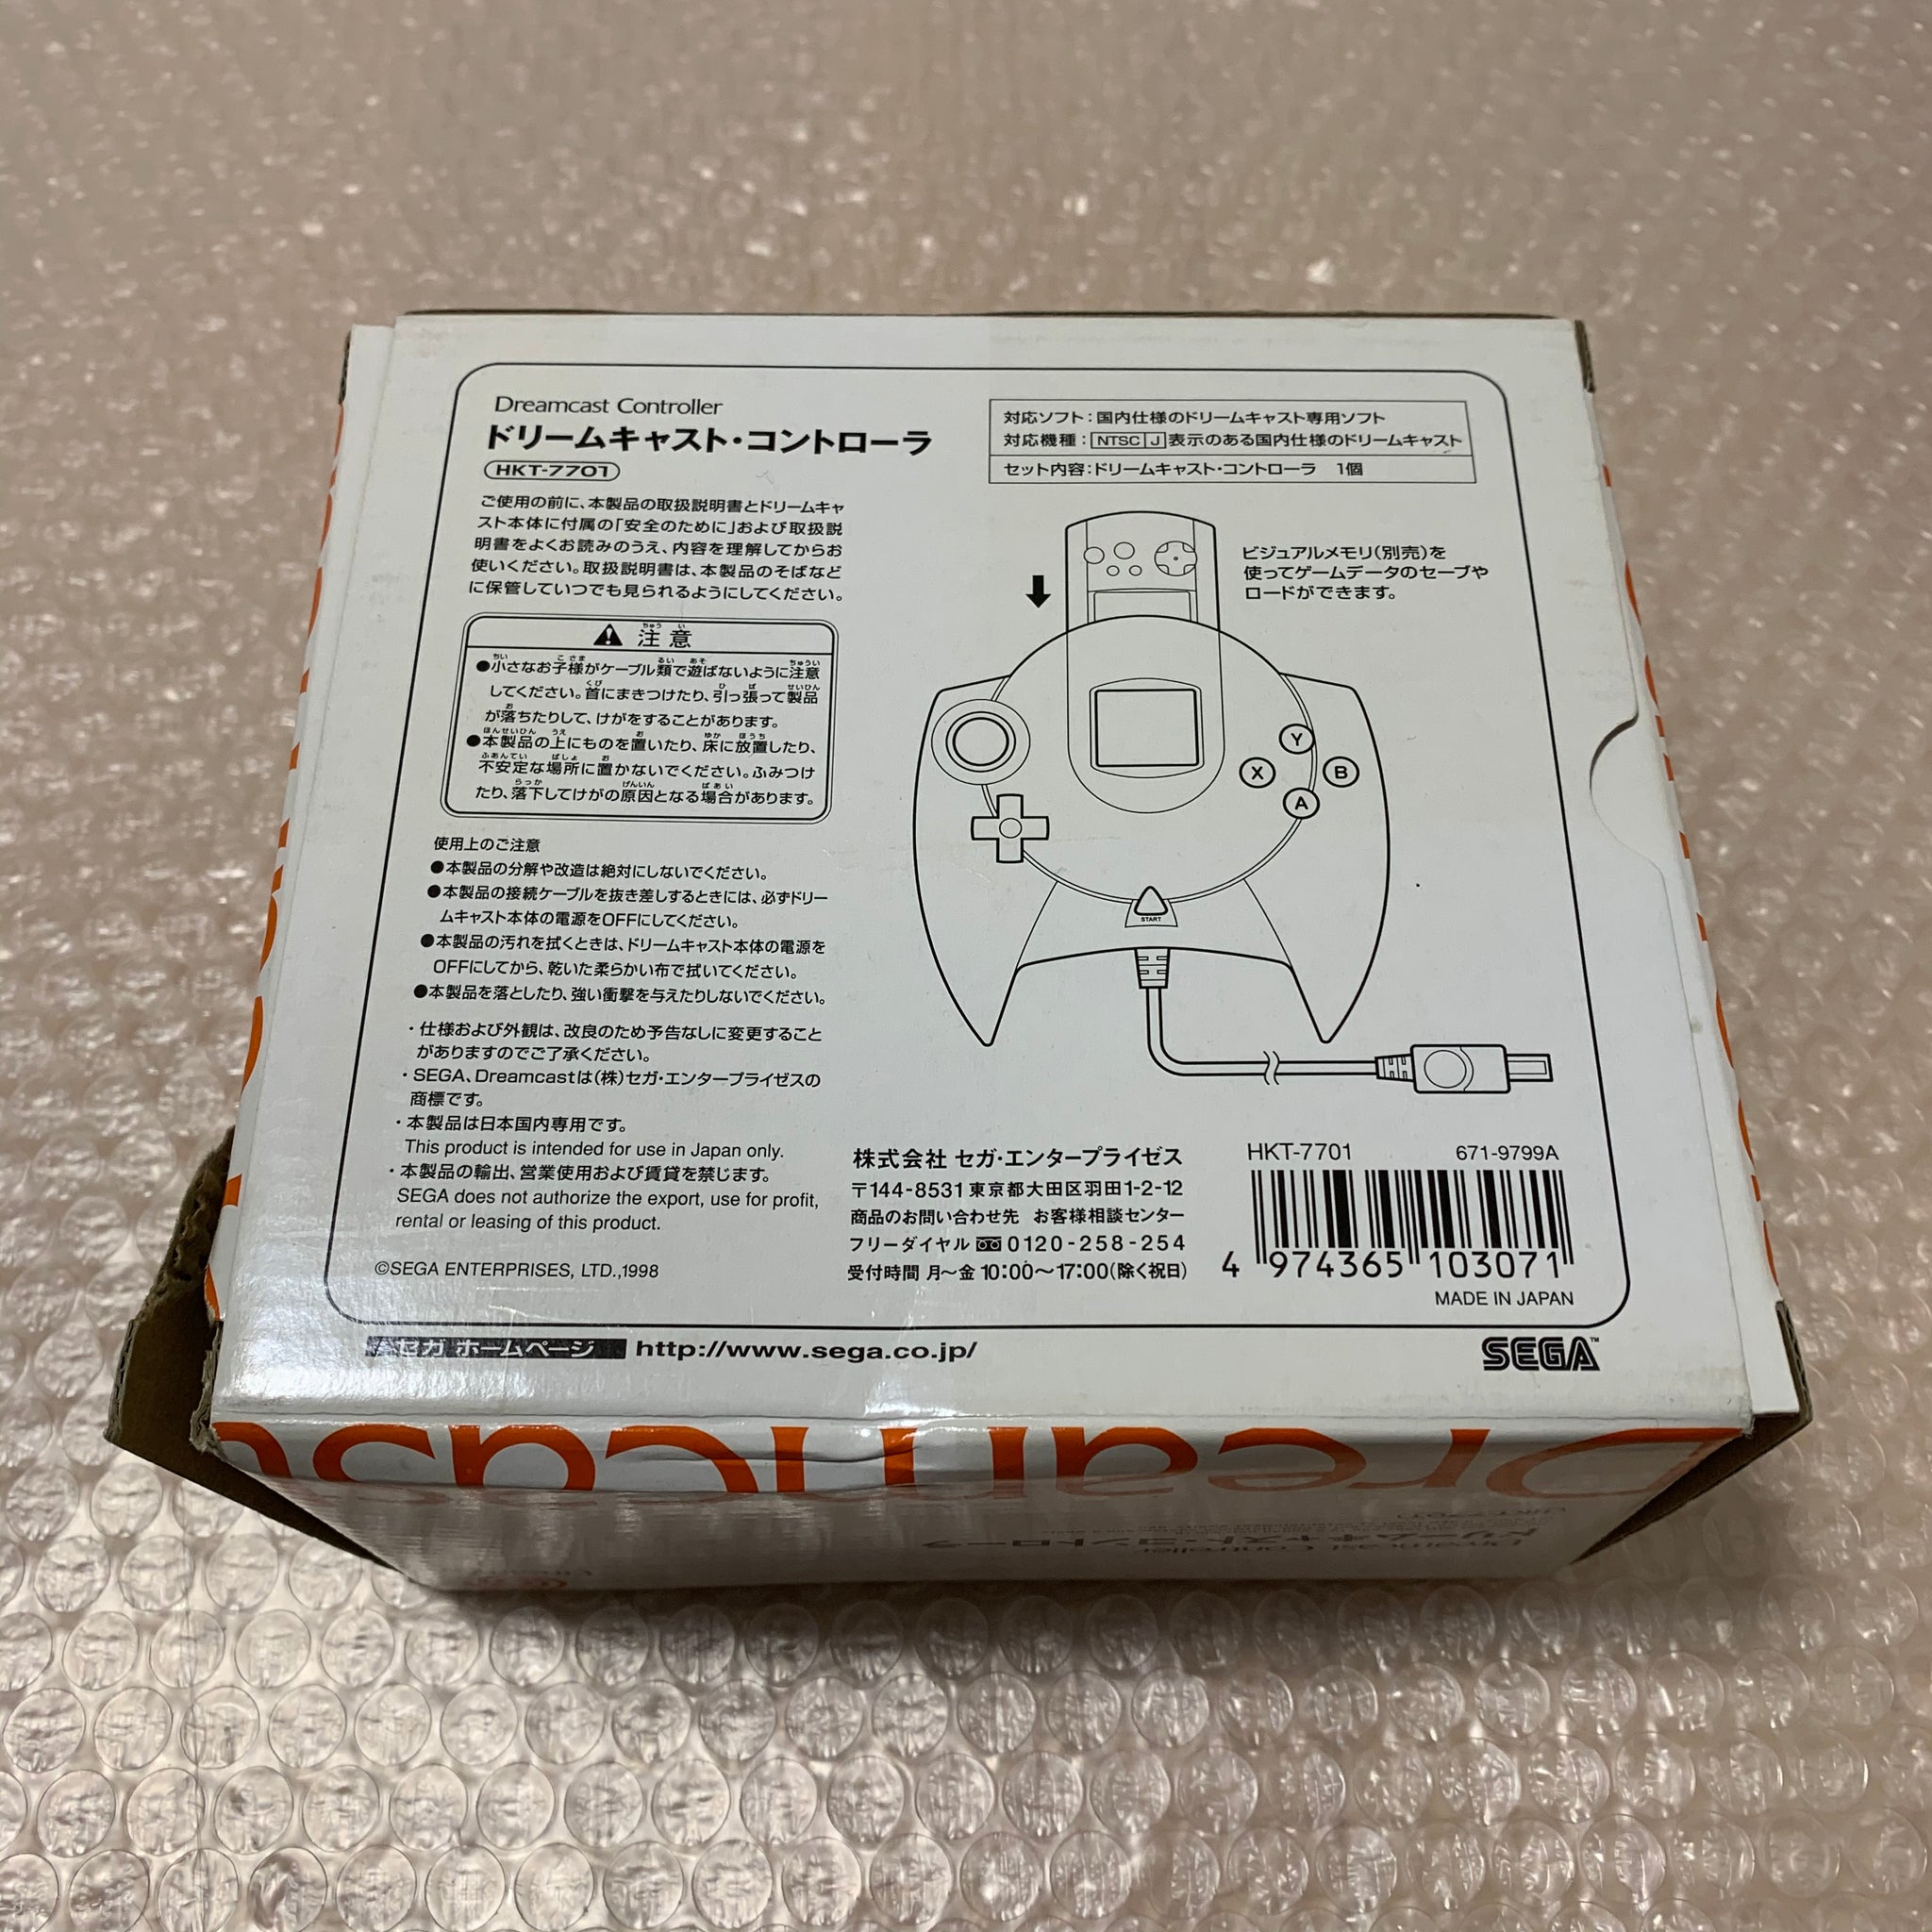 Counter-Strike: Condition Zero (Region Free) - SEGA Dreamcast